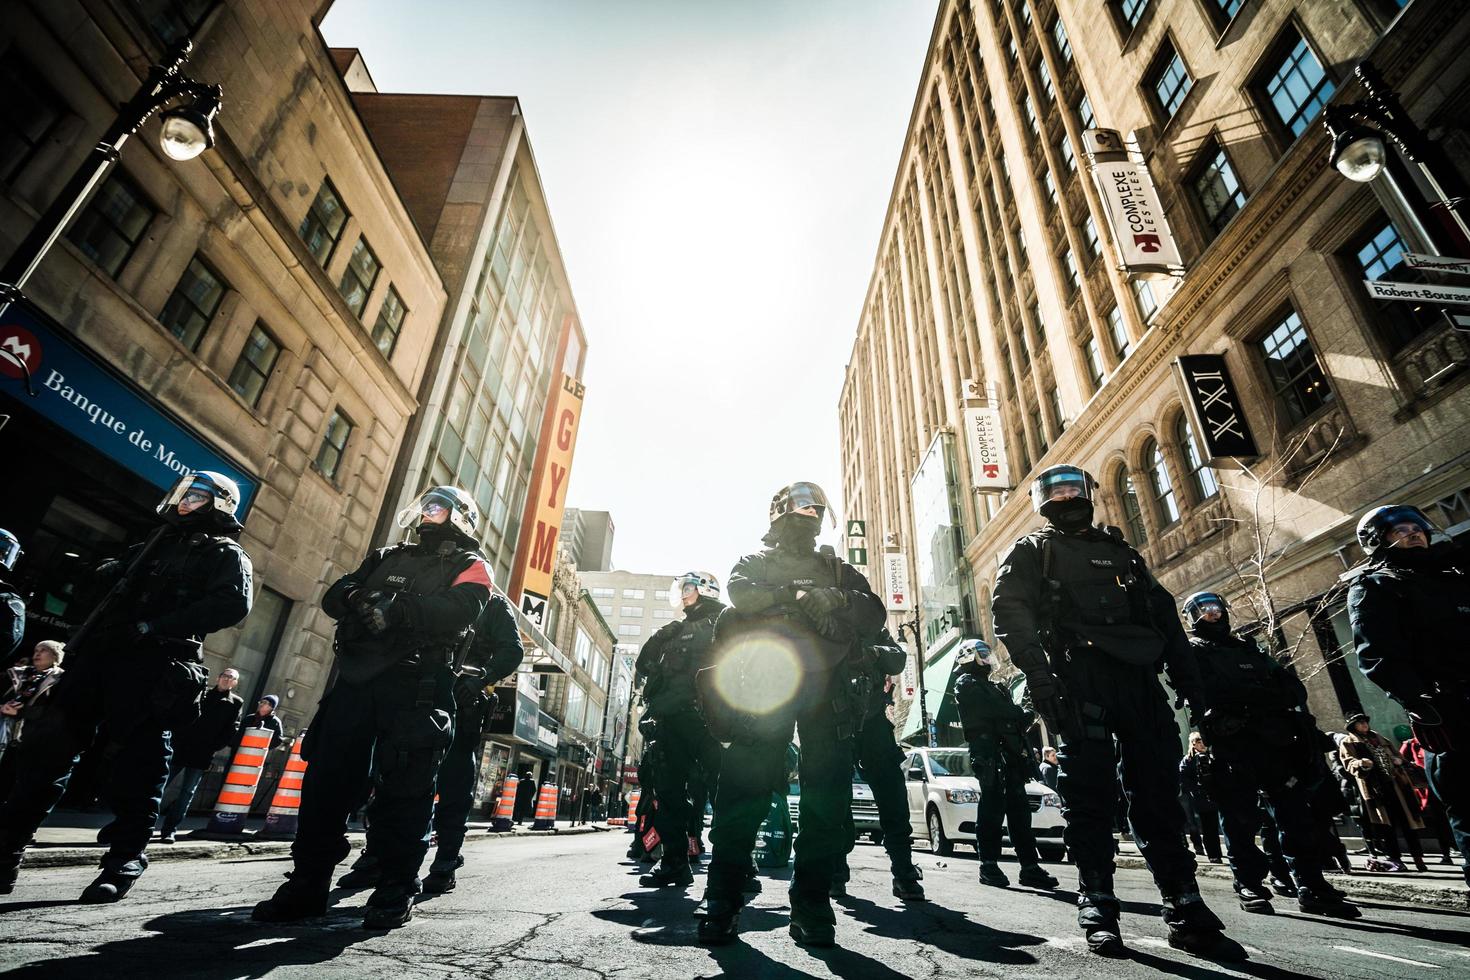 montreal, canadá 02 de abril de 2015 - grupo épico de policías listos para reaccionar en caso de problemas con los manifestantes. foto